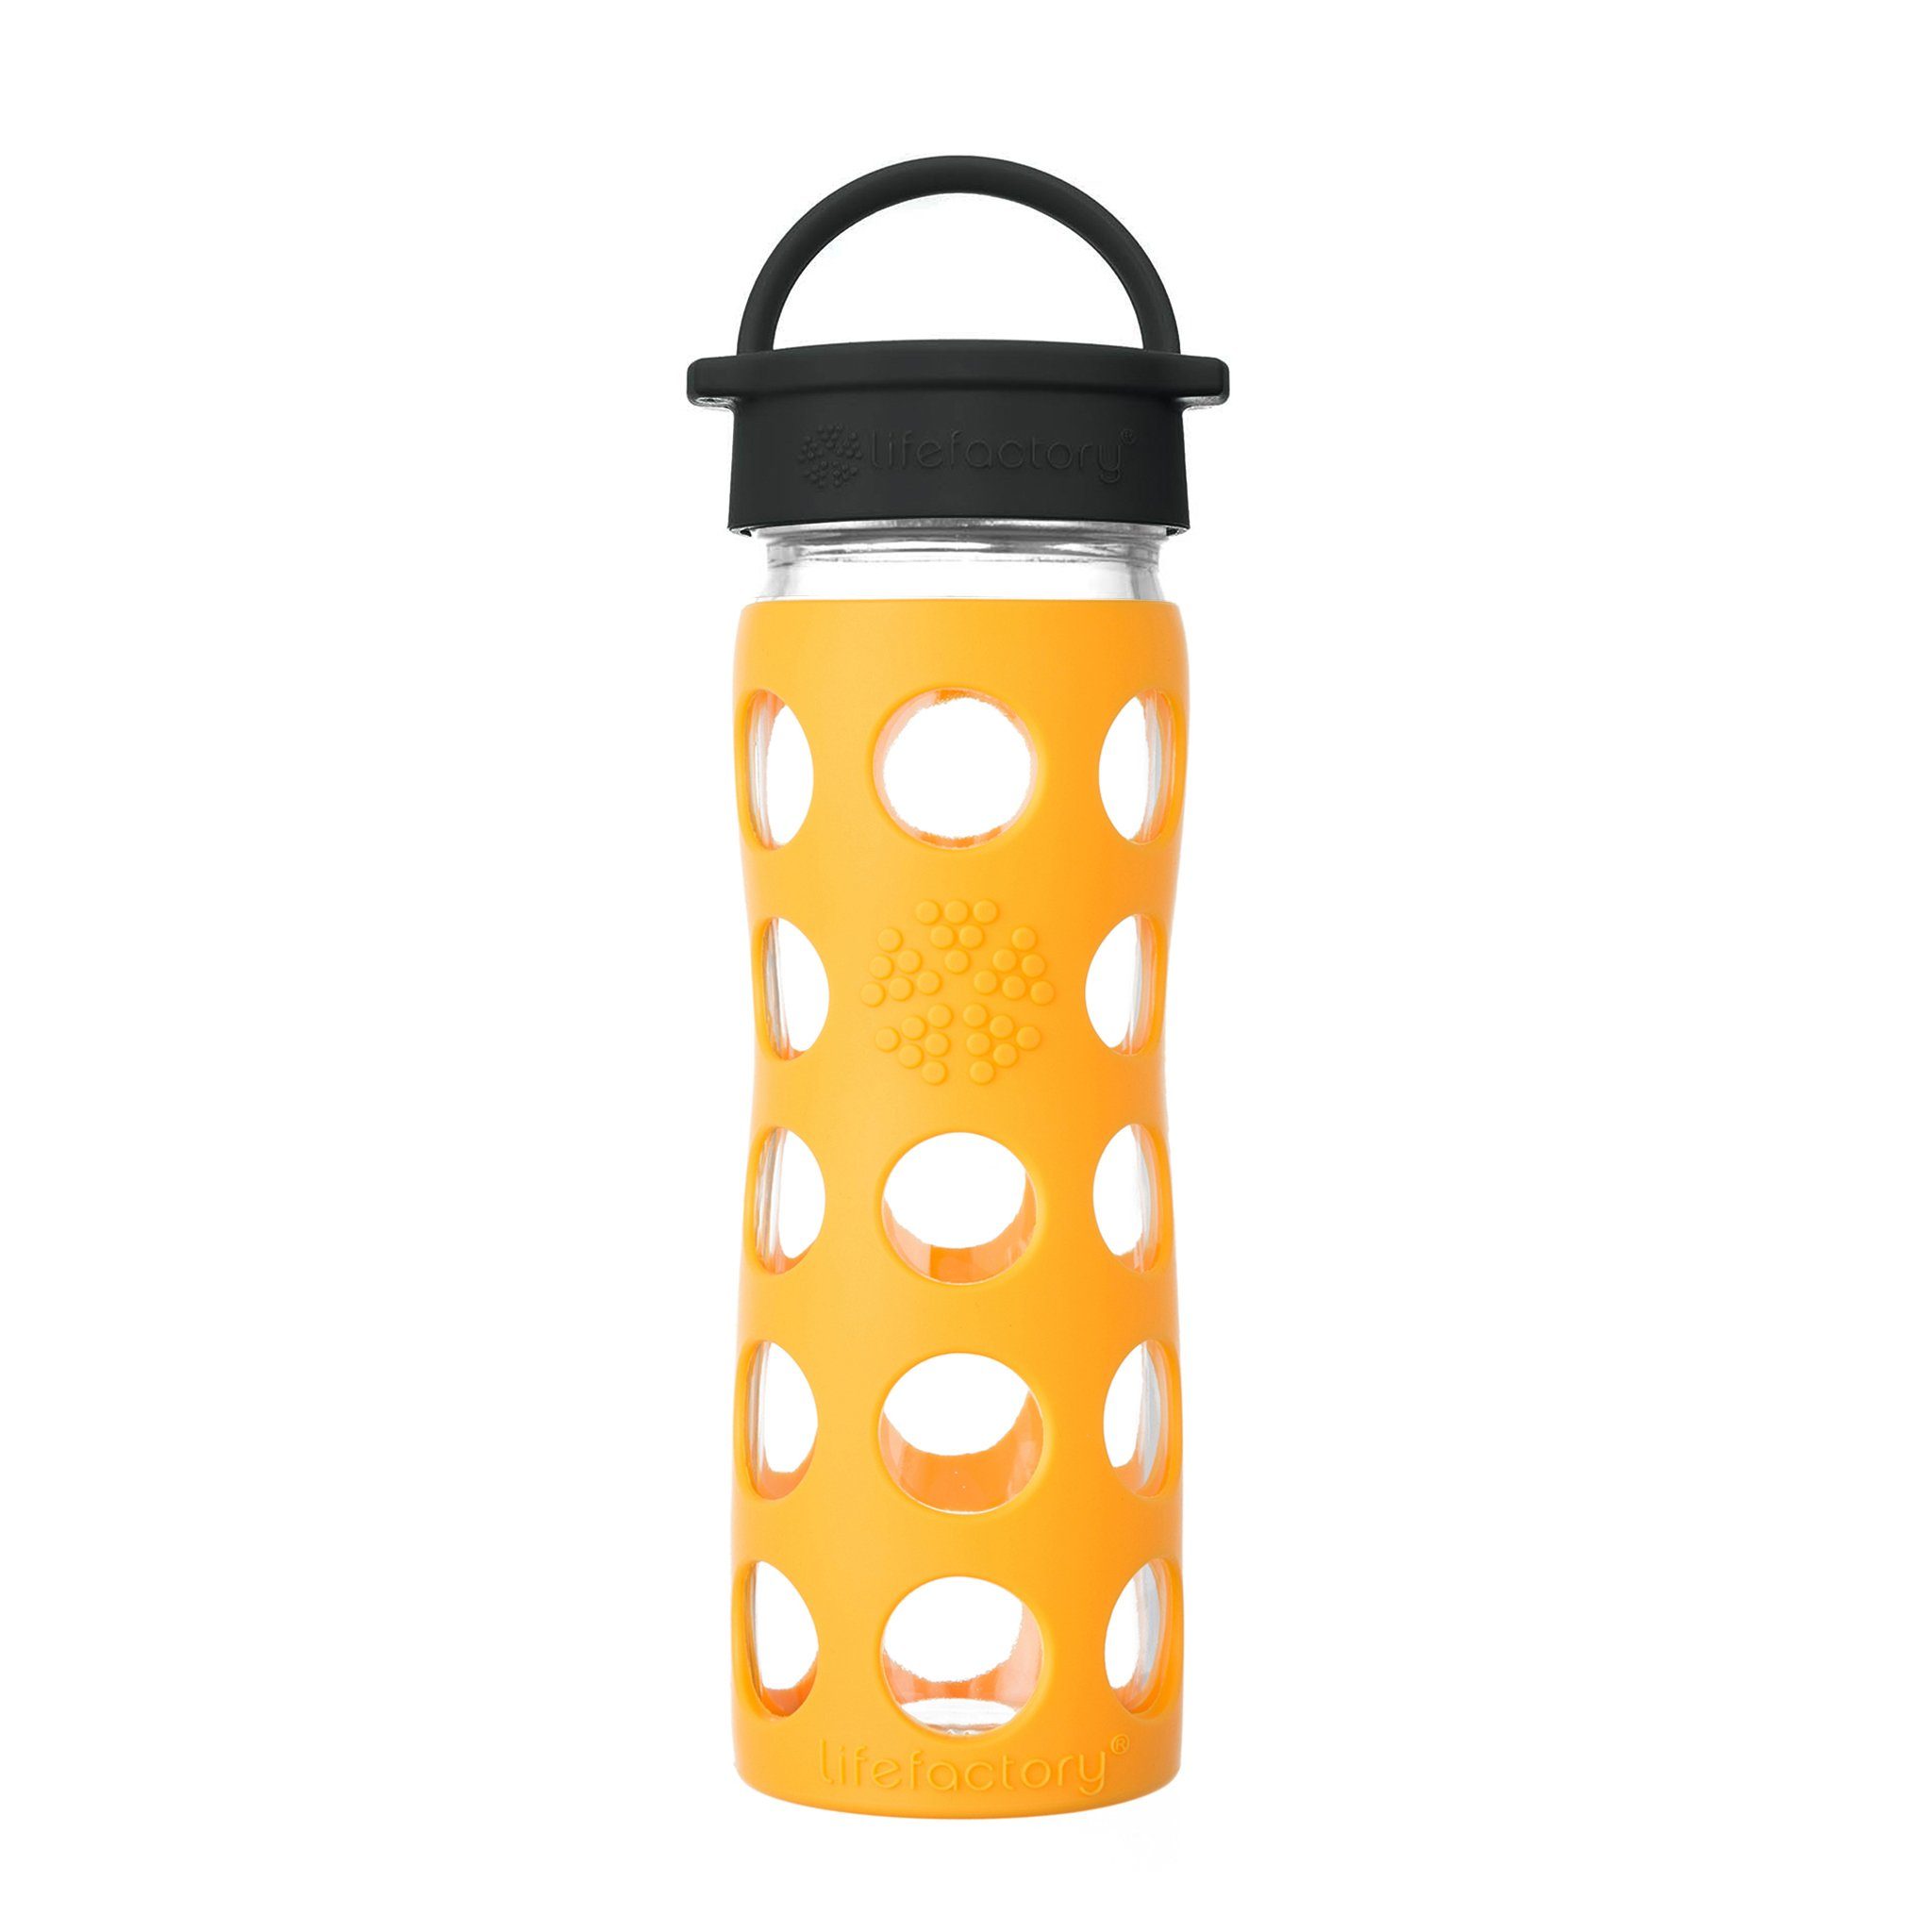 Lifefactory Babyflasche, Lifefactory Glas Flasche mit Silikonhülle und Schraubverschluss, 475ml marigold